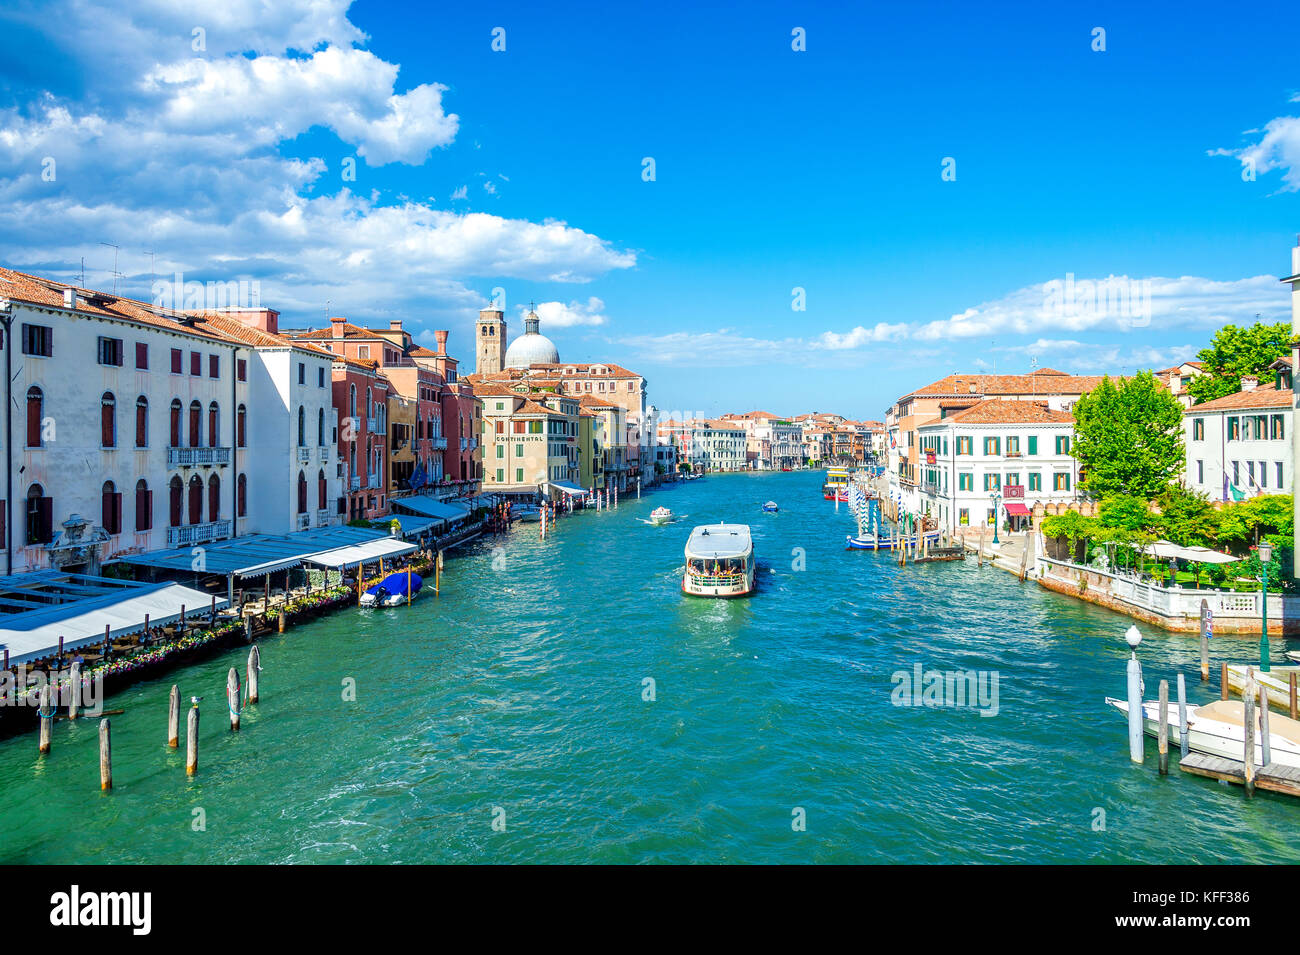 Un vaporetto sur le Grand Canal à Venise, Italie Banque D'Images